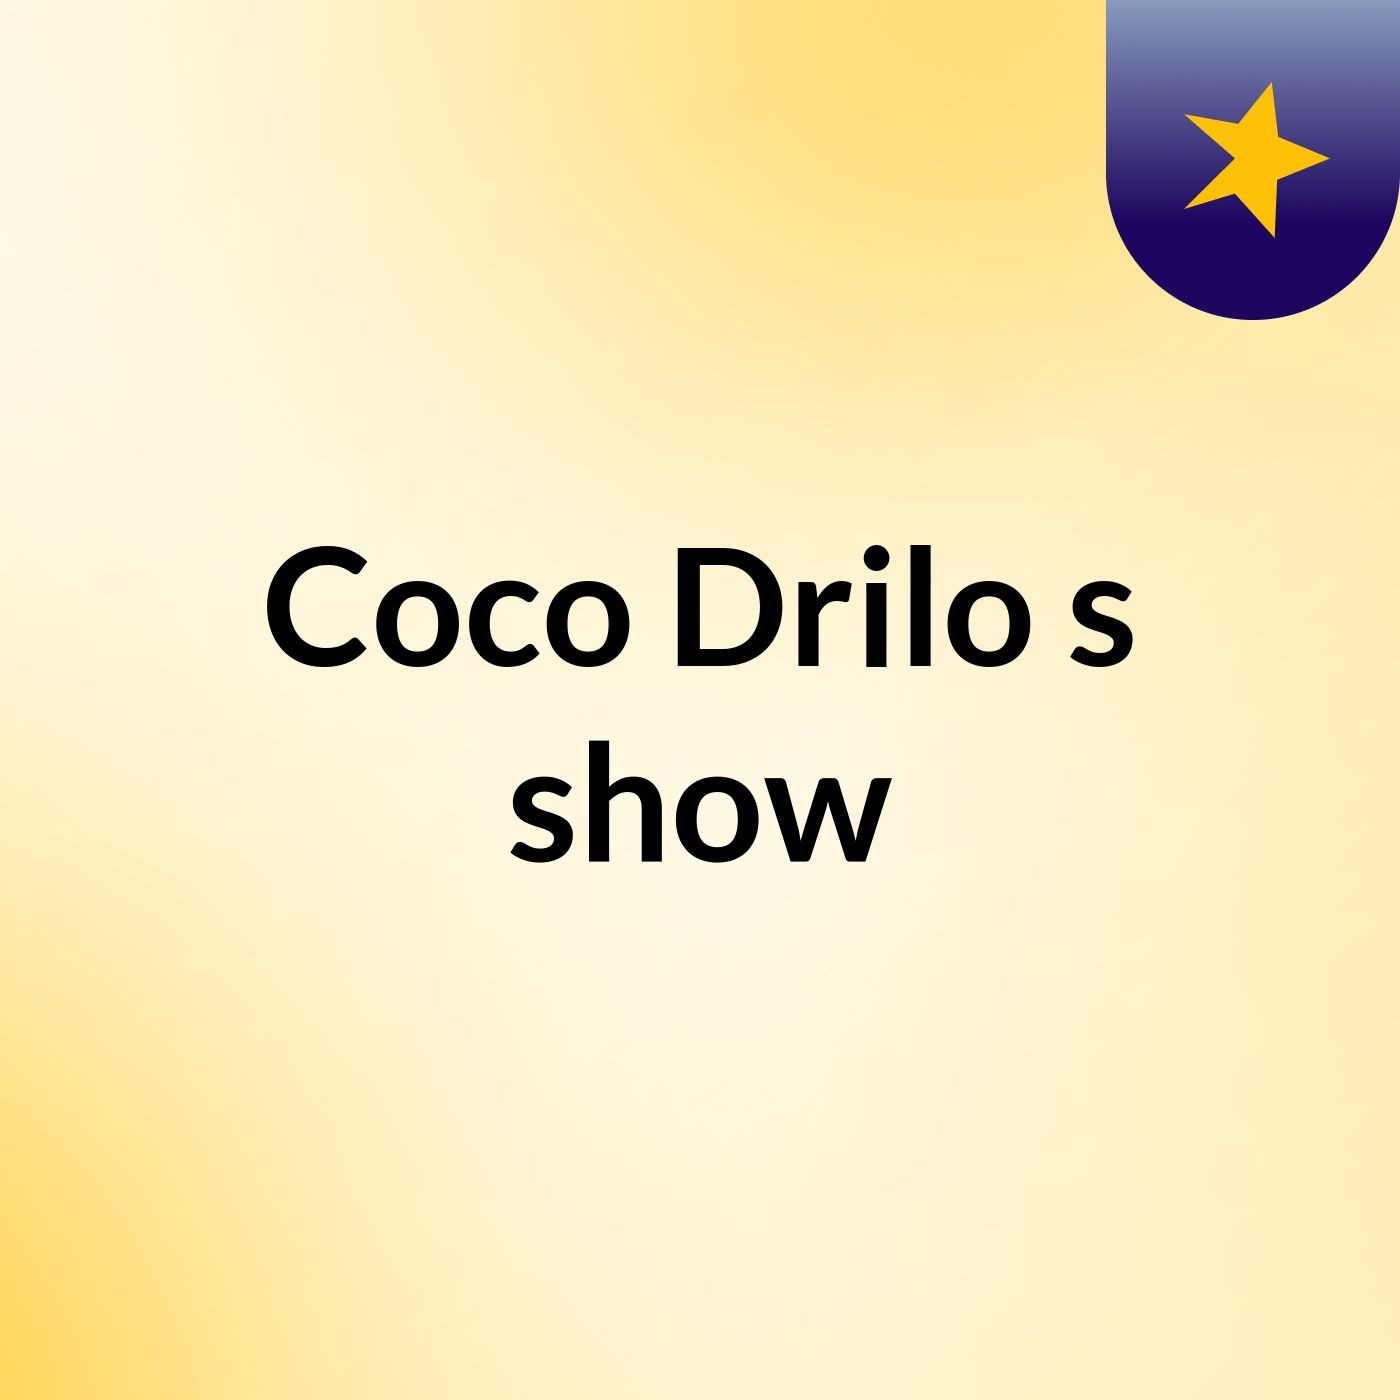 Coco Drilo's show